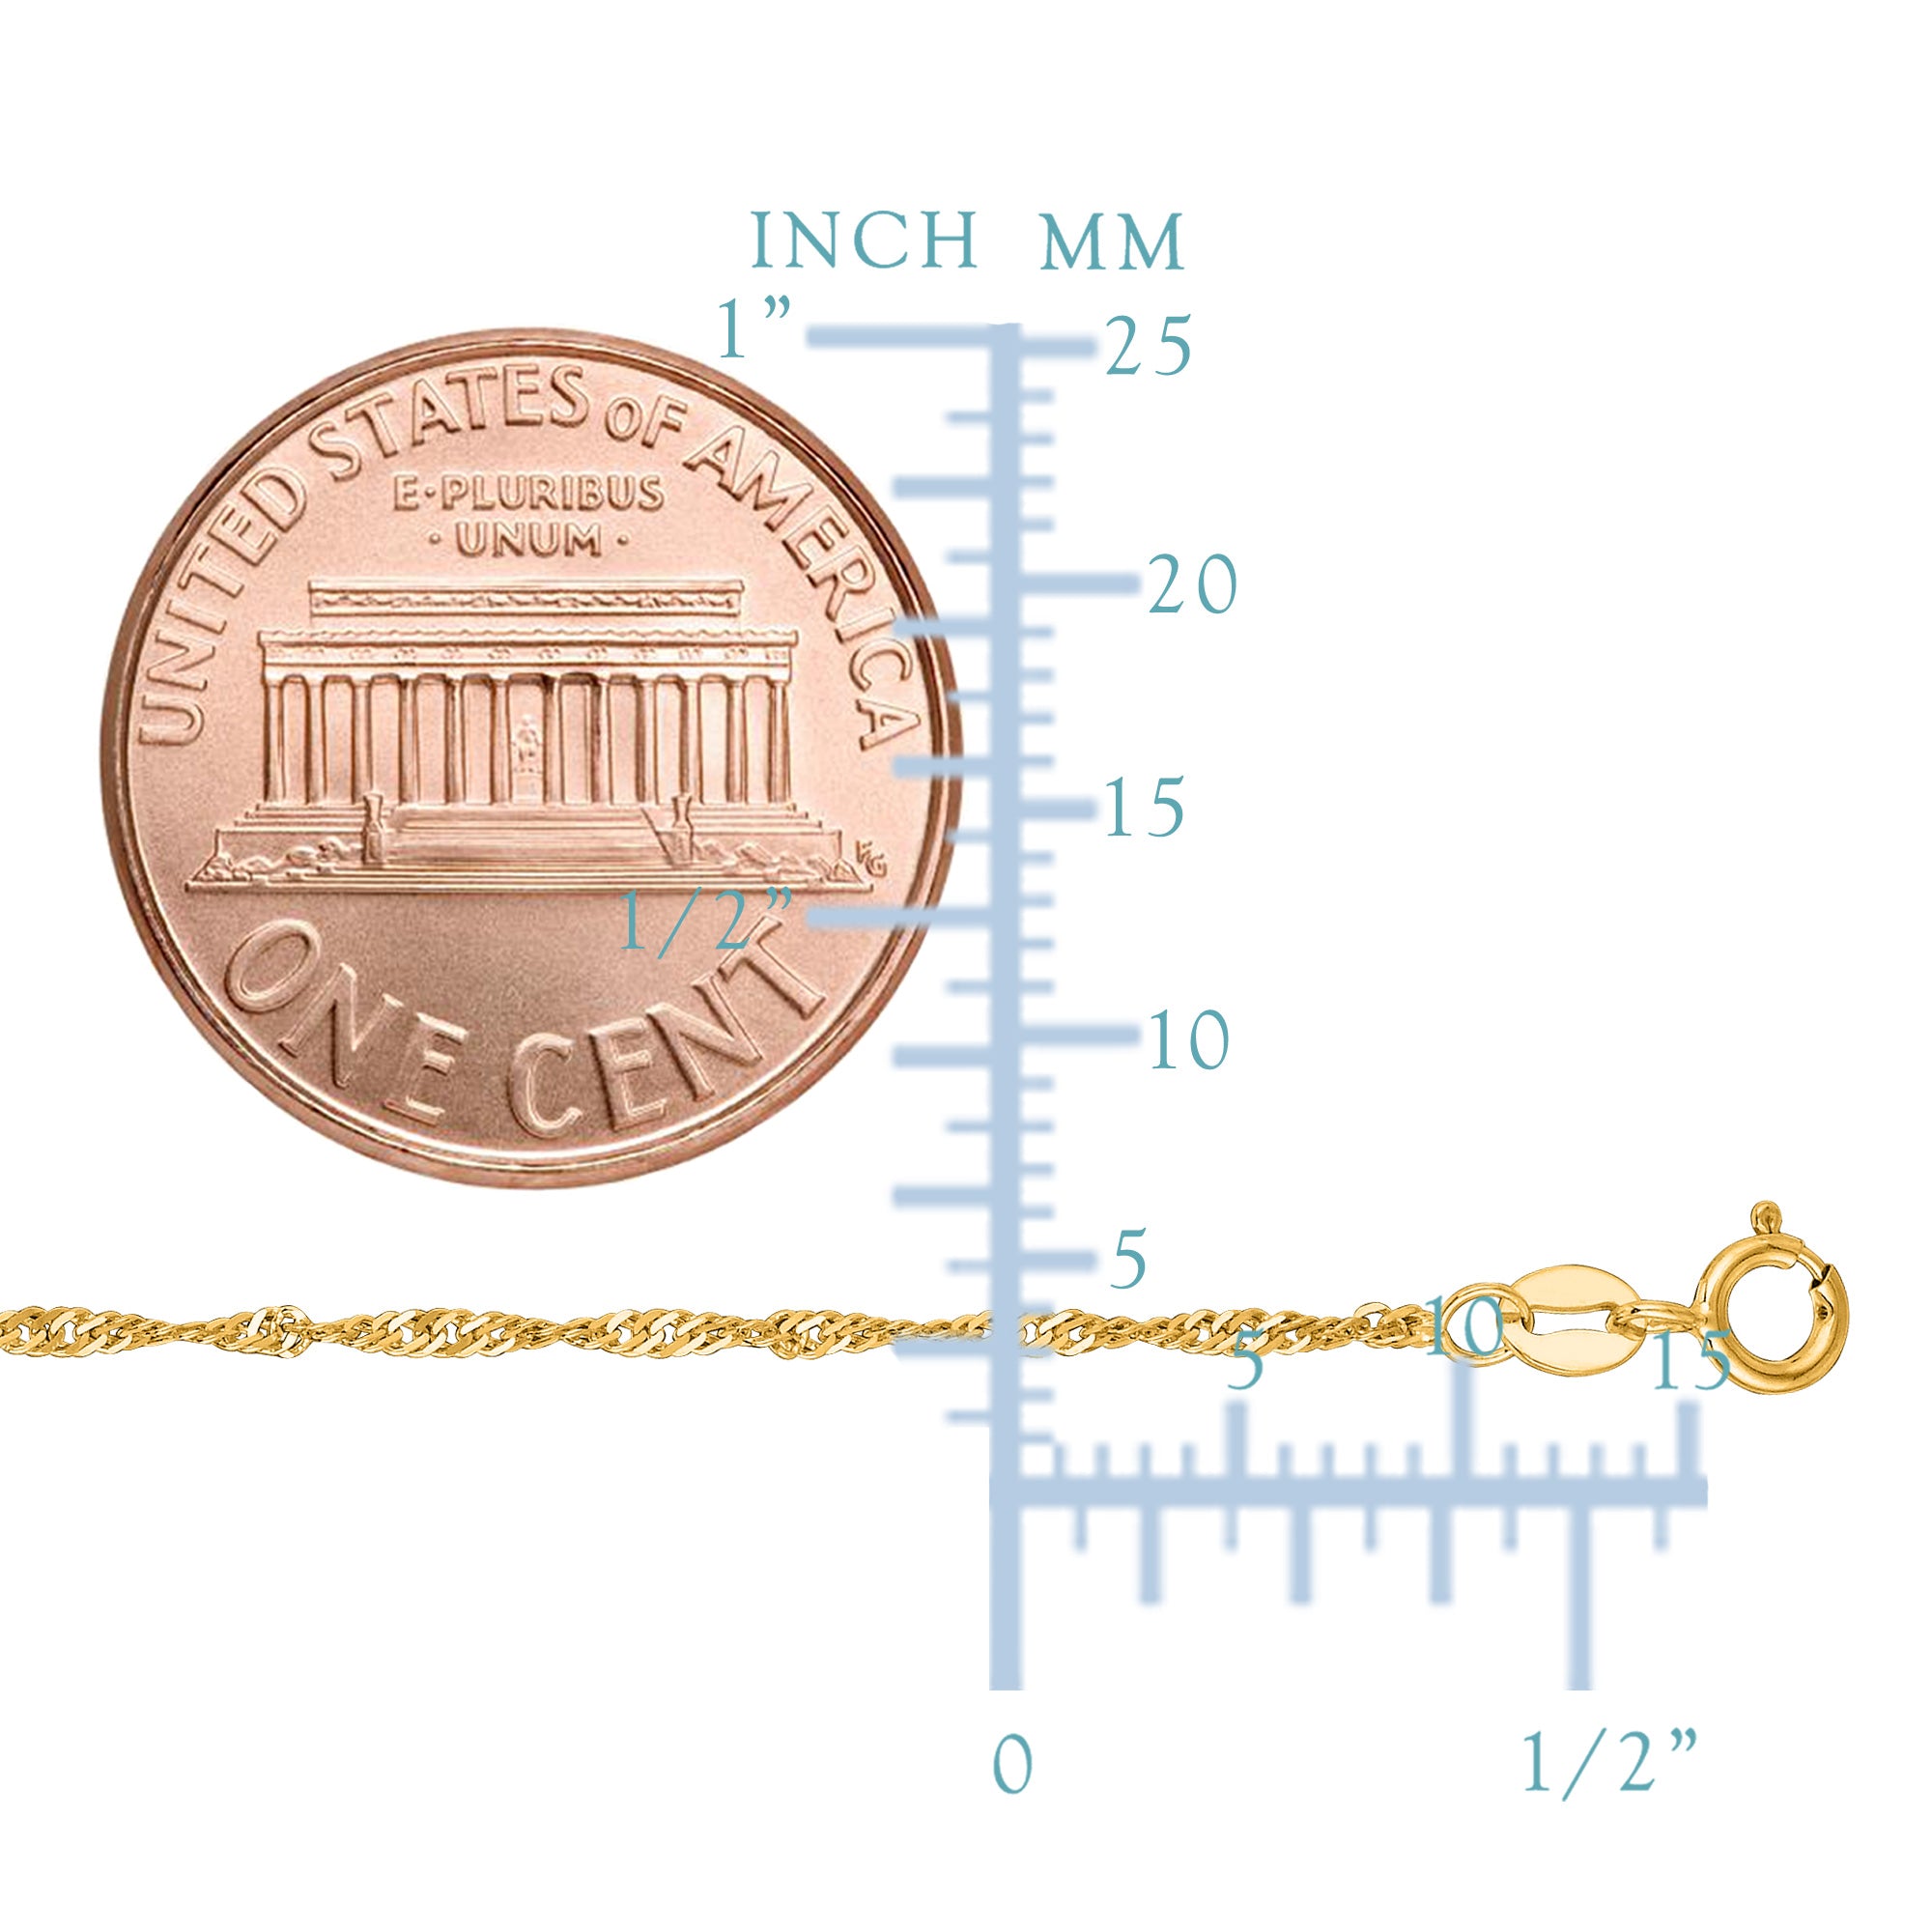 14 k gul guld Singapore kæde halskæde, 1,5 mm fine designer smykker til mænd og kvinder